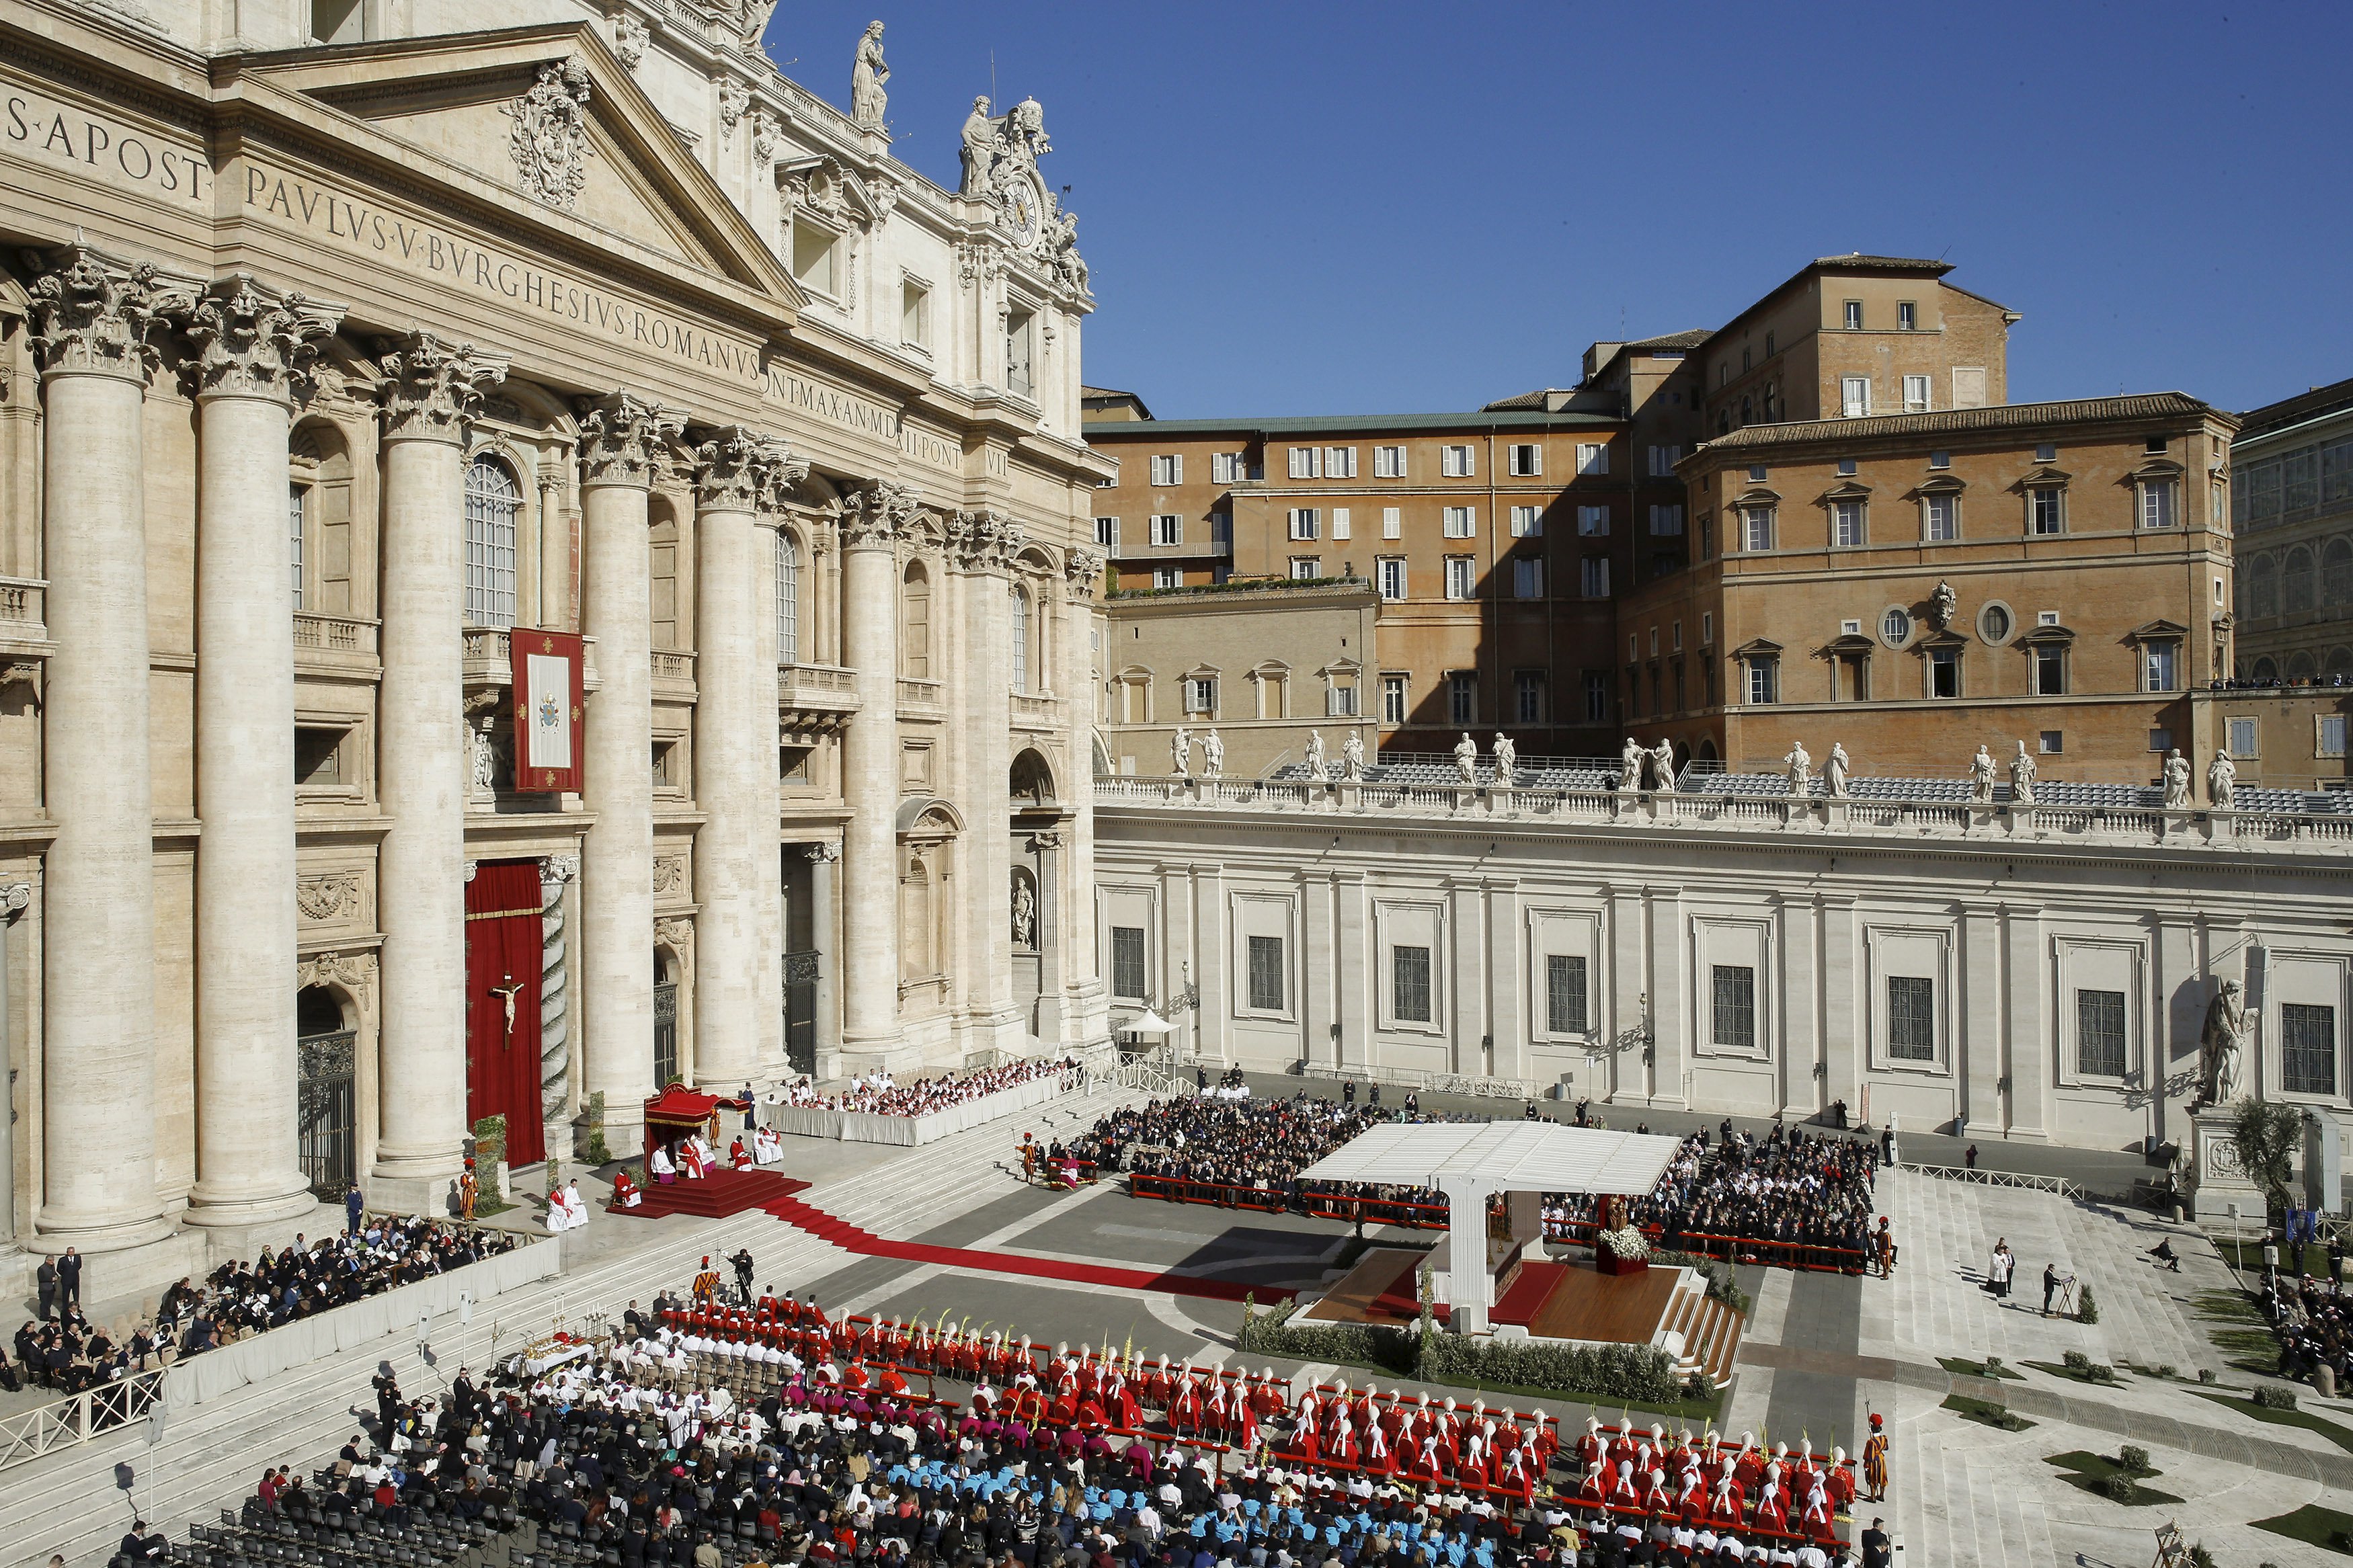 El “Jubileo de la Misericordia” del Papa Francisco ya tiene página web